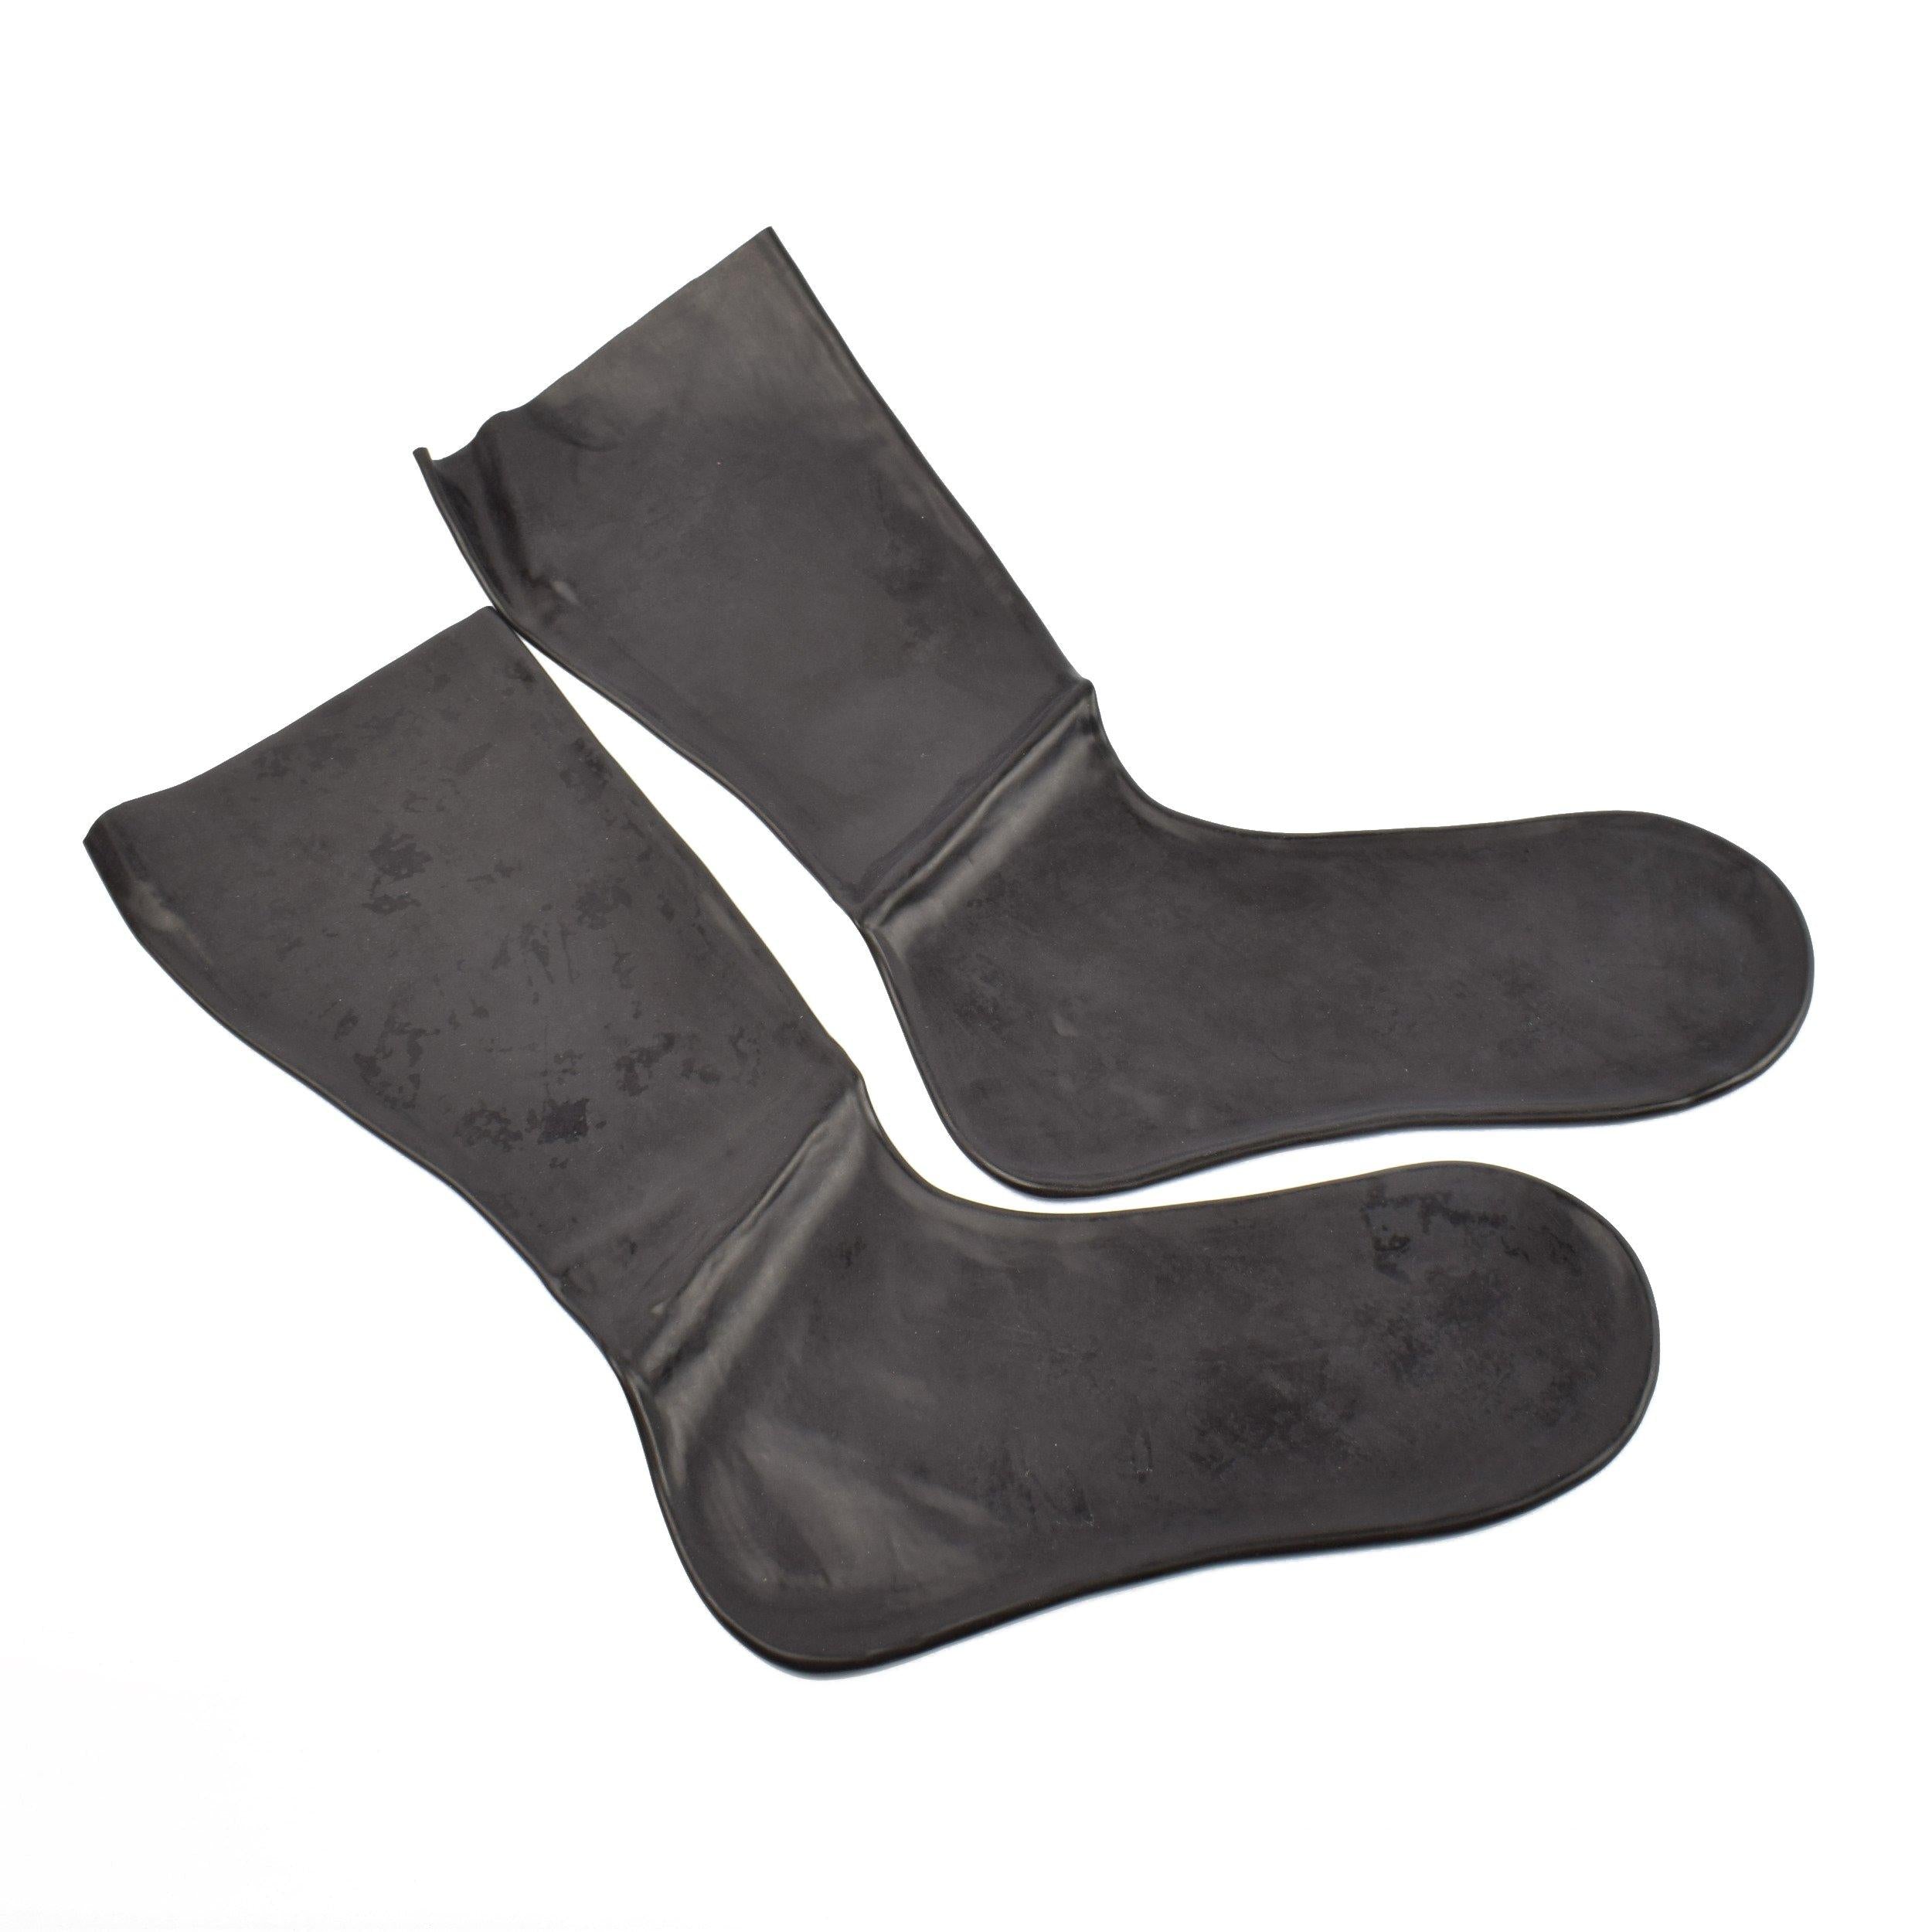 Rubberfashion Sexy Latex Socken kurz - Rubber Latexsocken Knöchel lang - Latex Strümpfe für Damen und Herren